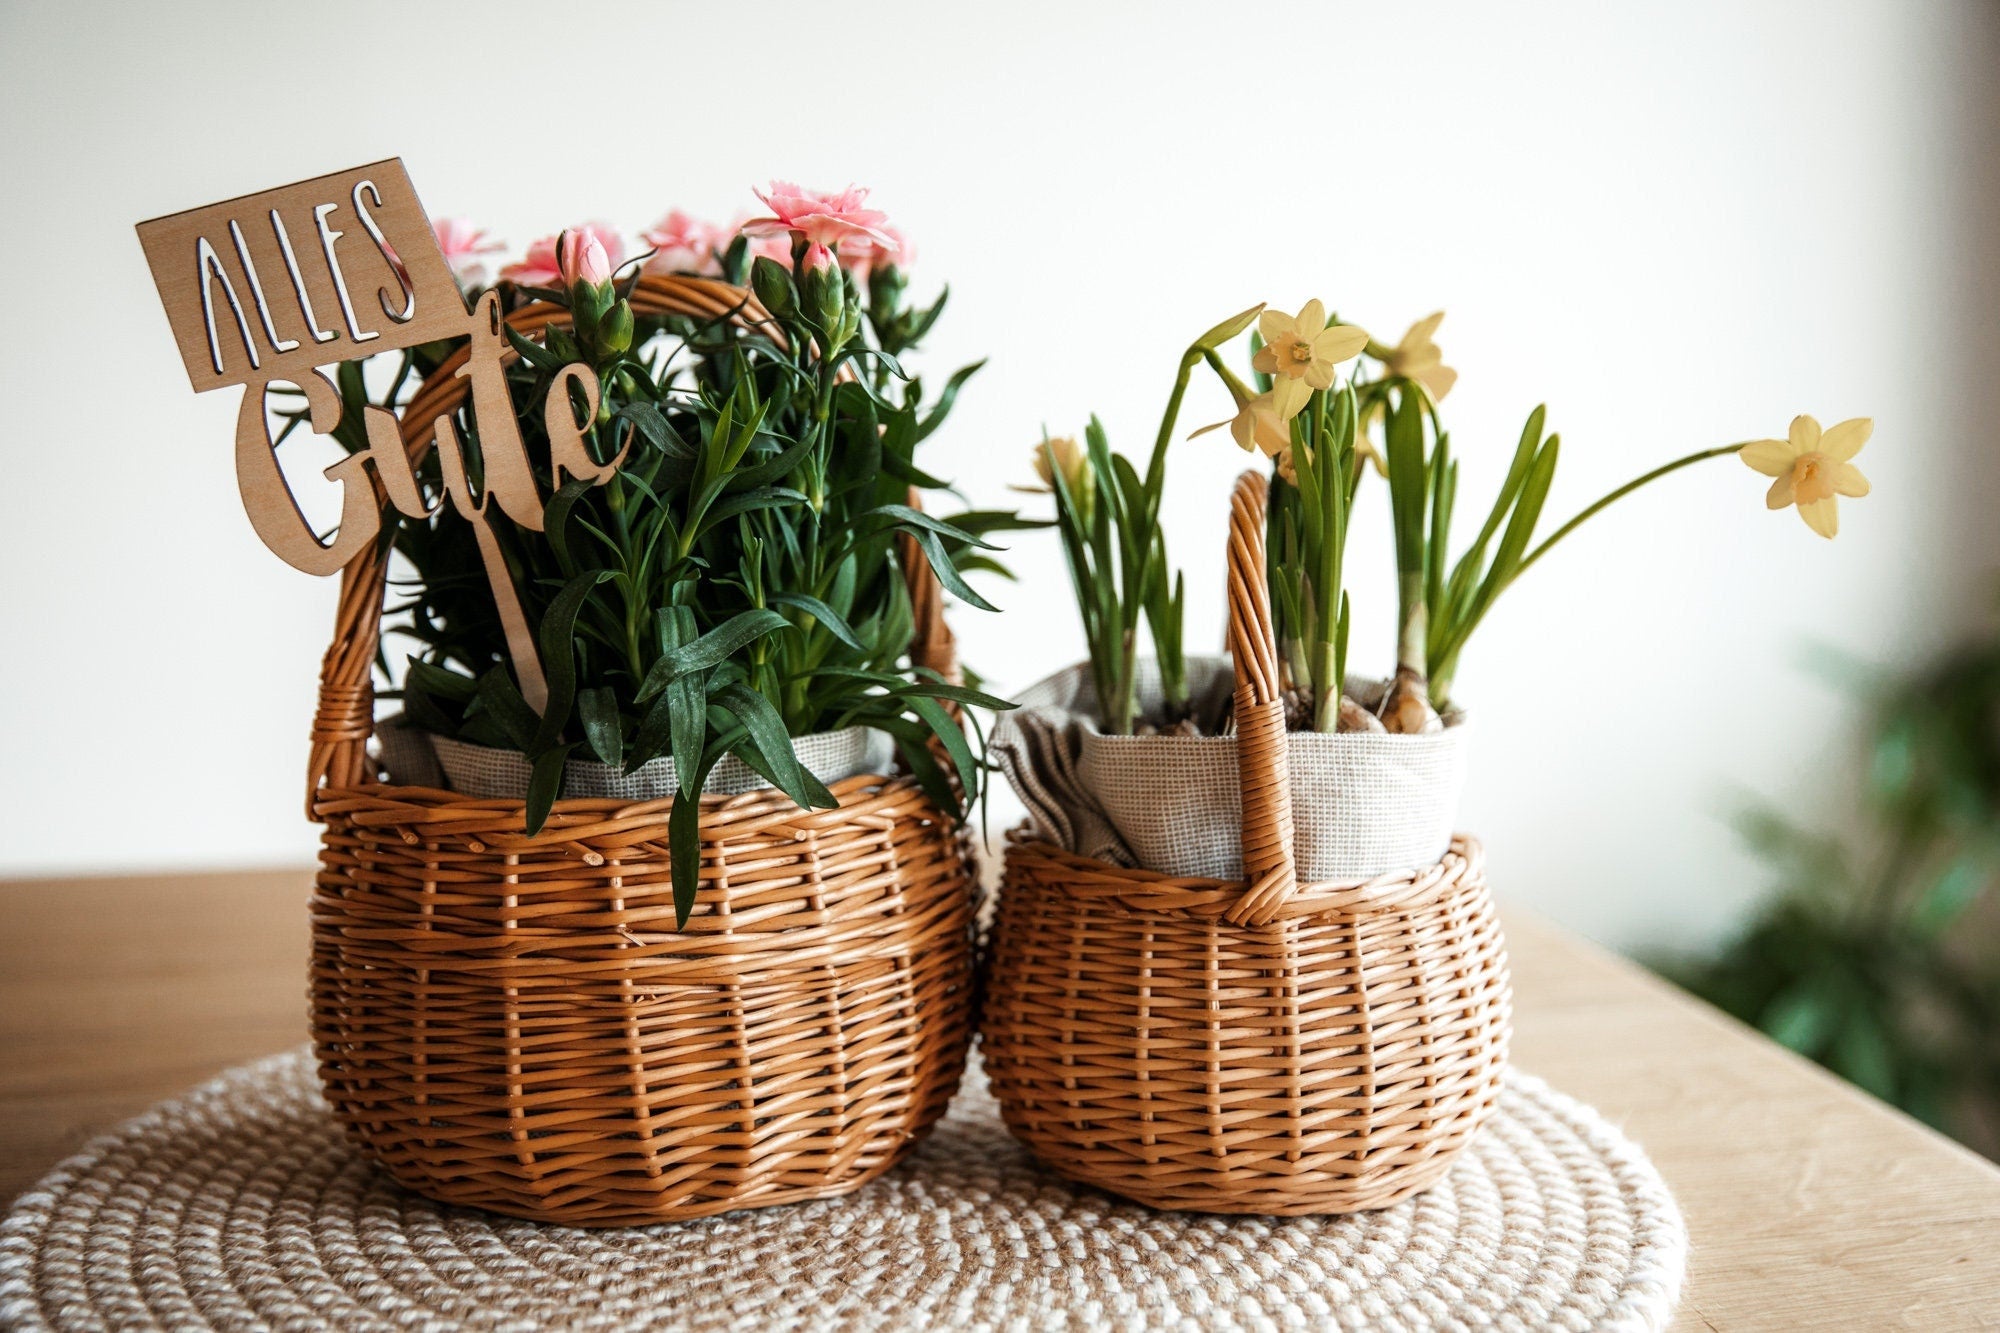 Körbchen für Kinder aus Weide in 3 Größen / Blumenkörbchen / Weidenkorb